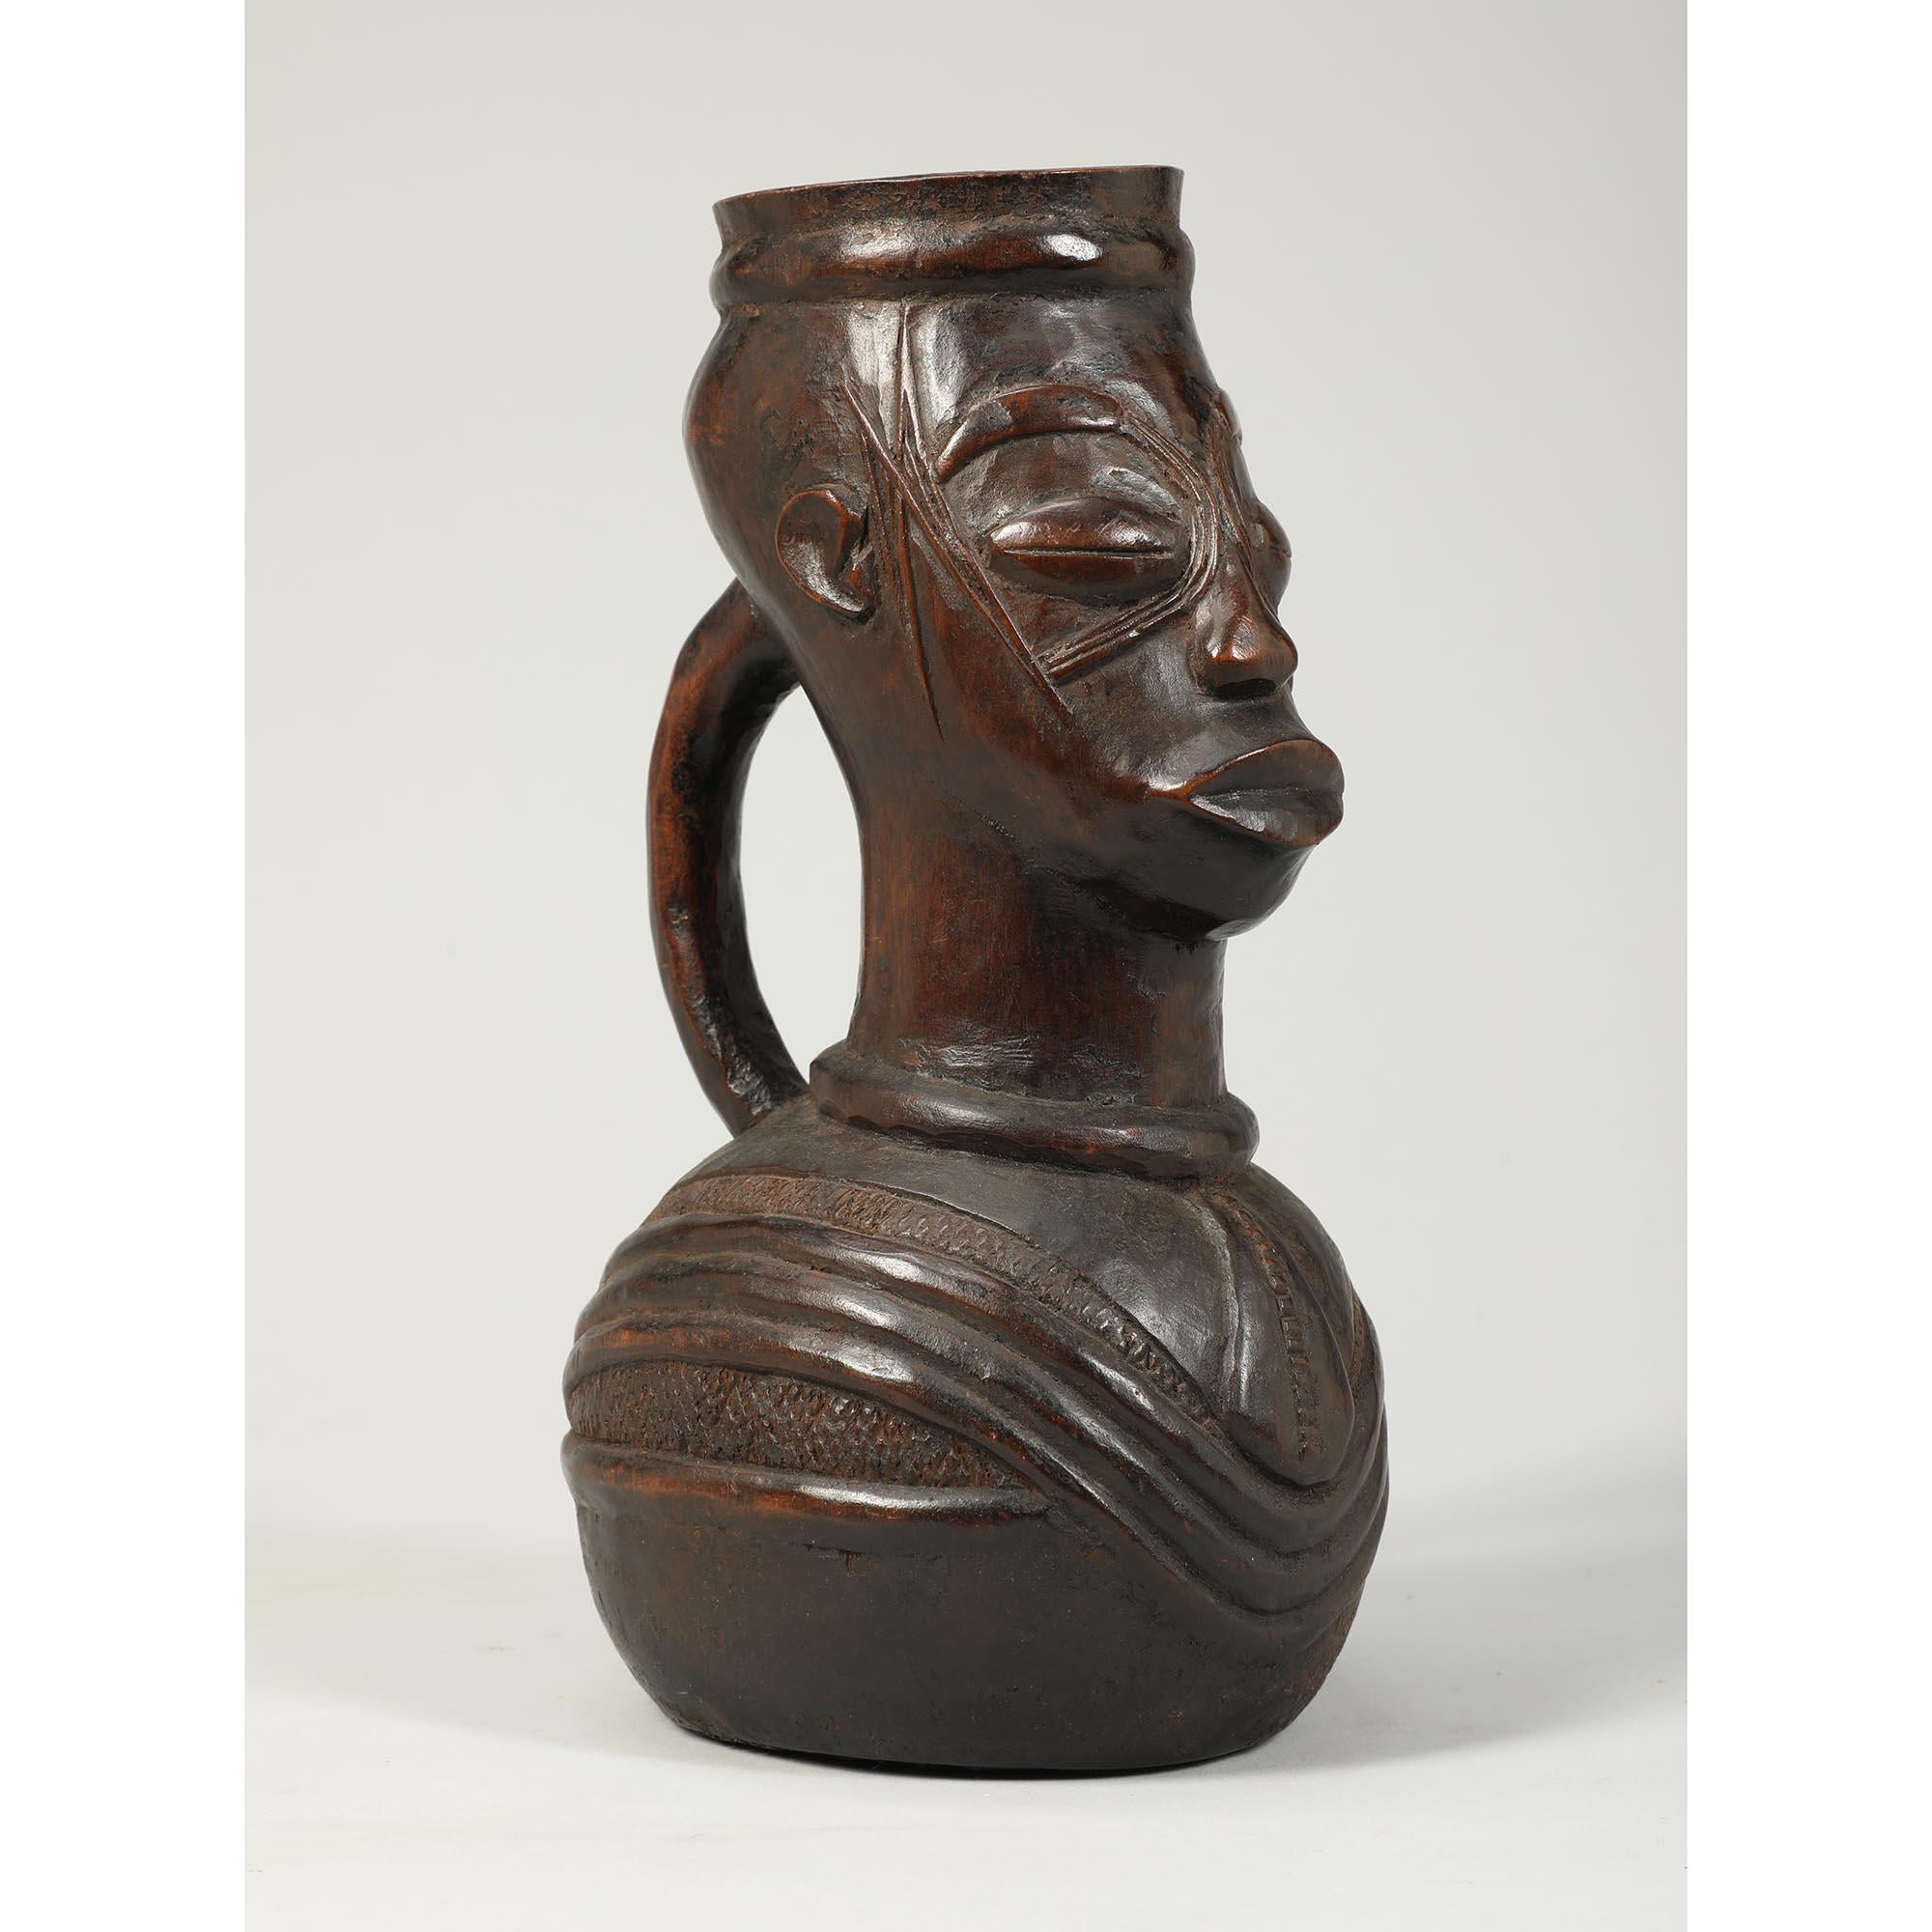 Vase rituel Mangbetu en bois sculpté à usage tribal, originaire du Congo, Afrique.
Vase rituel sous forme de pichet en bois avec anse, visage expressif avec scarifications, matière organique sèche à l'intérieur.  Patine profonde due à l'utilisation